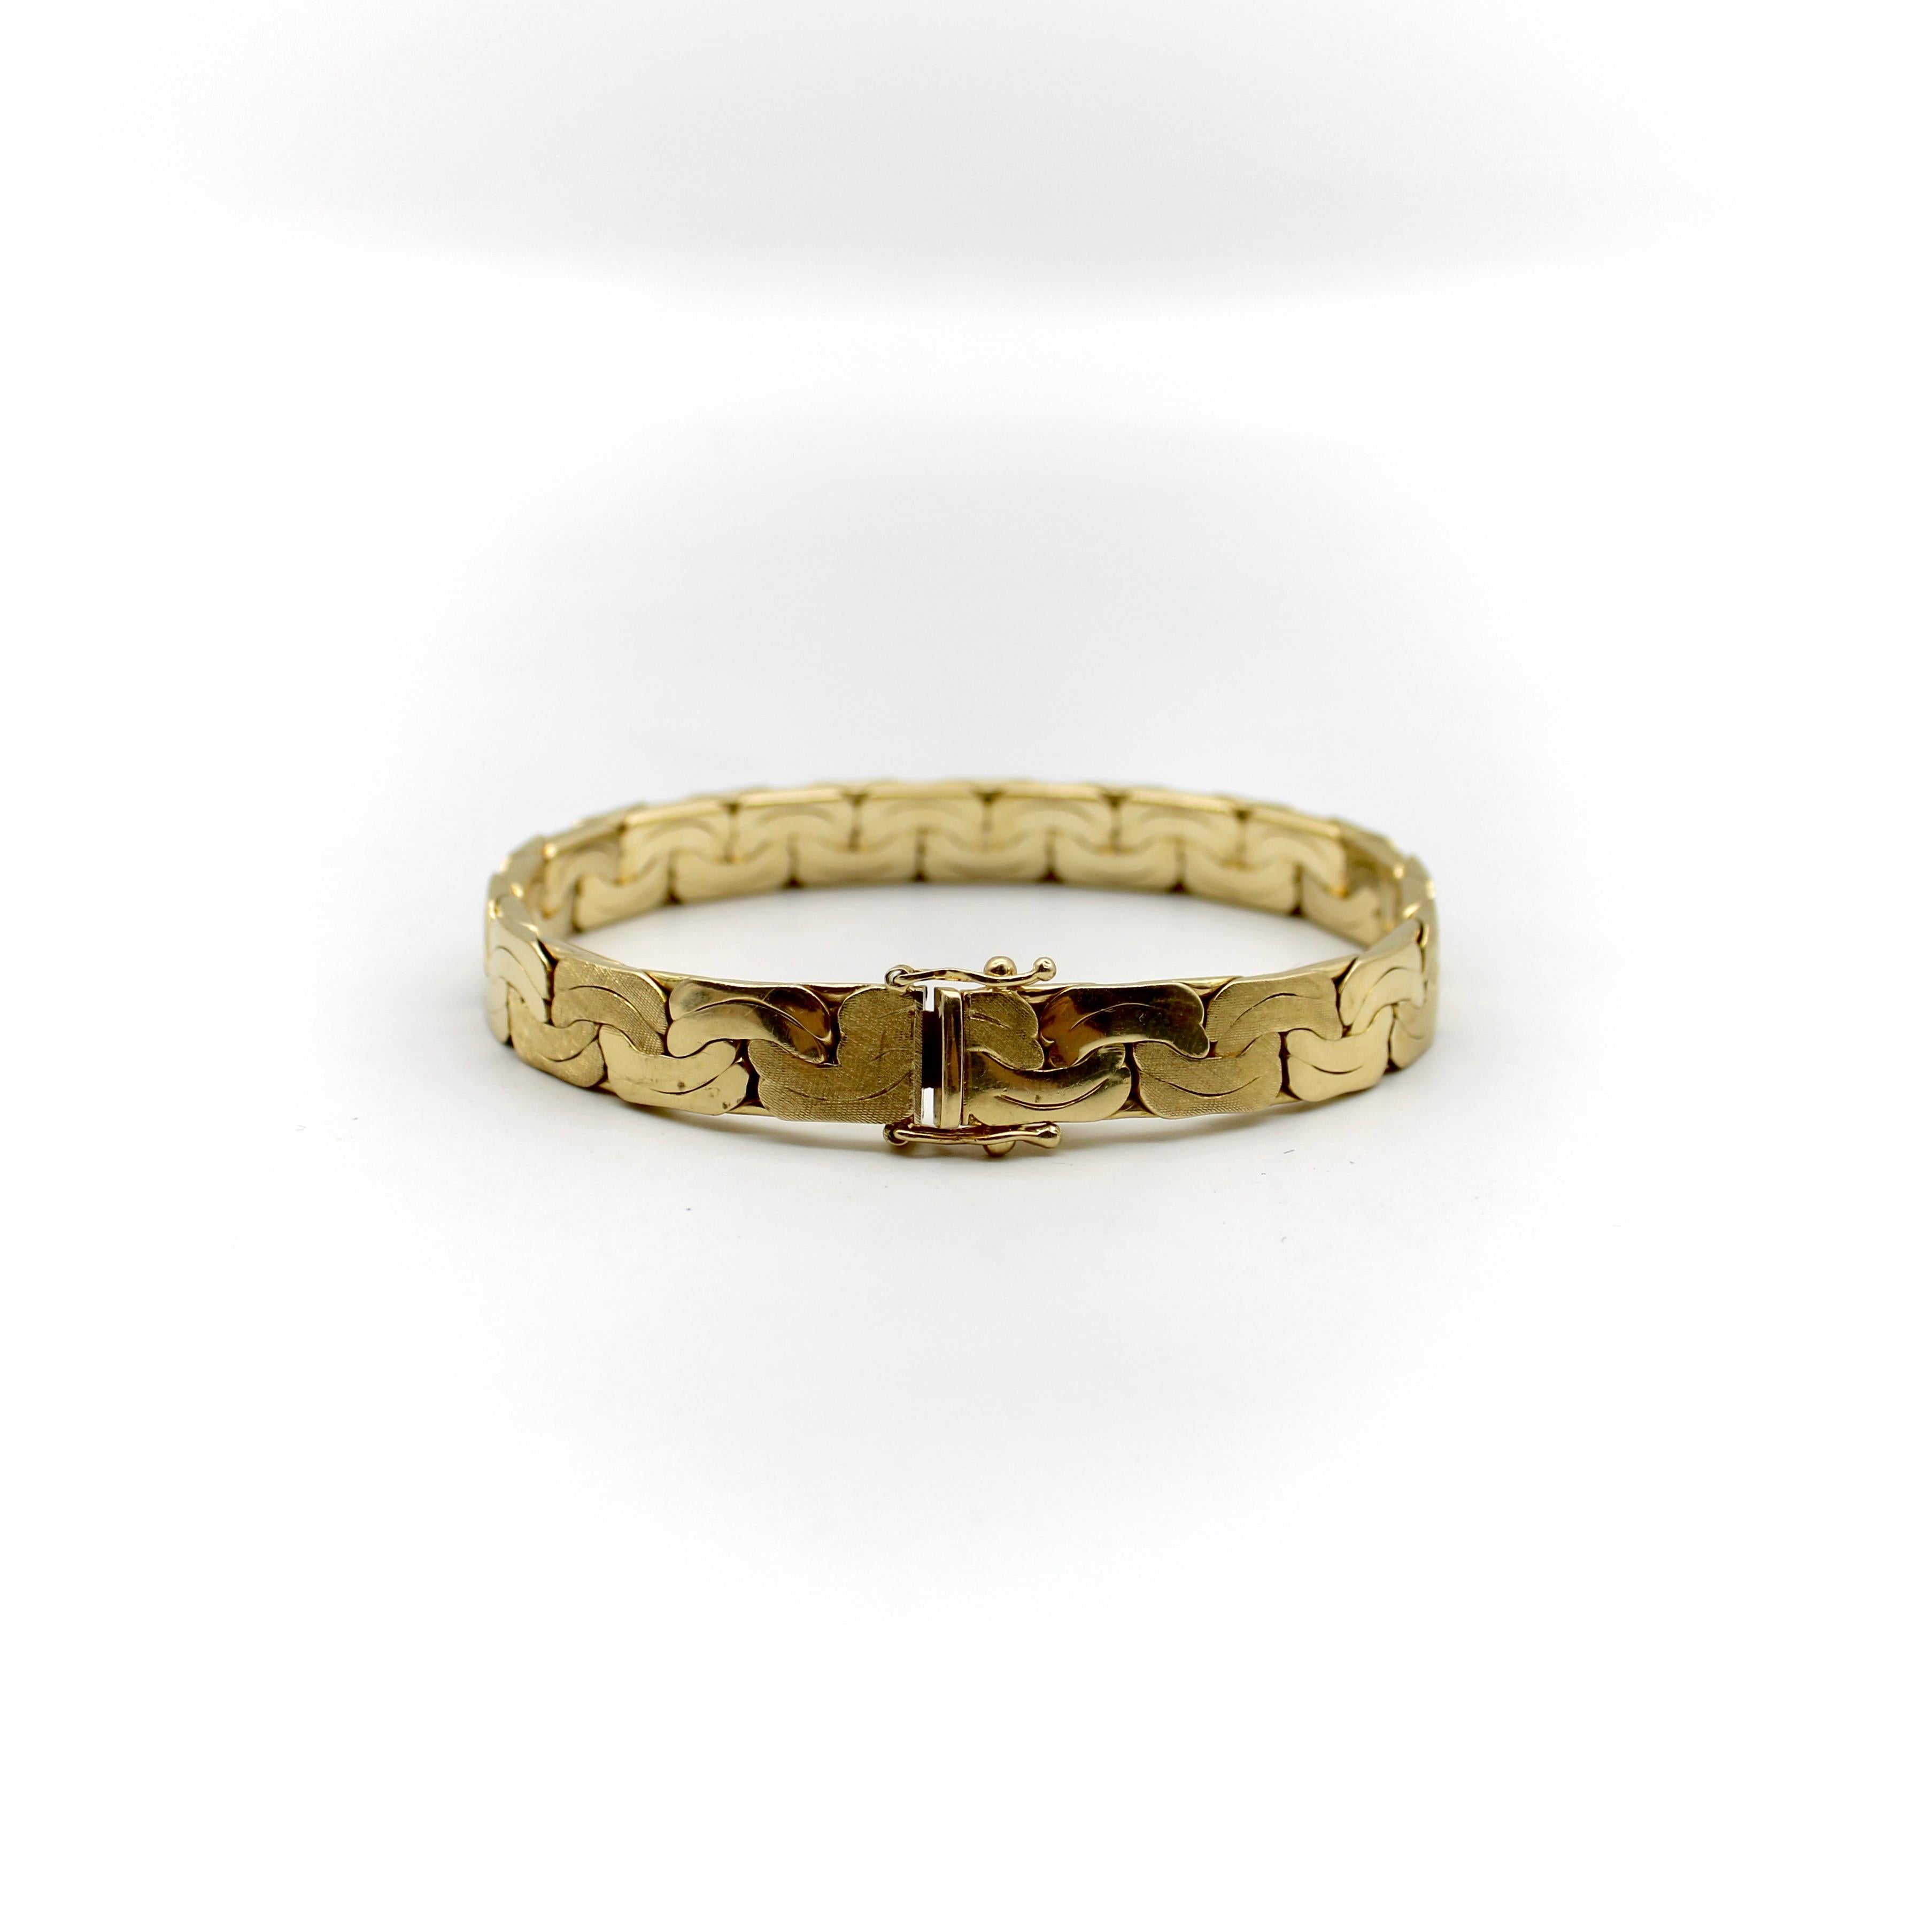 CIRCA 1980, dieses Armband aus 14 Karat Gold hat ein geometrisches Design und eine solide, fließende Form A. Das Glied erscheint gequetscht, mit einer geschwungenen Linie in der Mitte und einem abwechselnden Florentine-Finish. Es handelt sich um ein